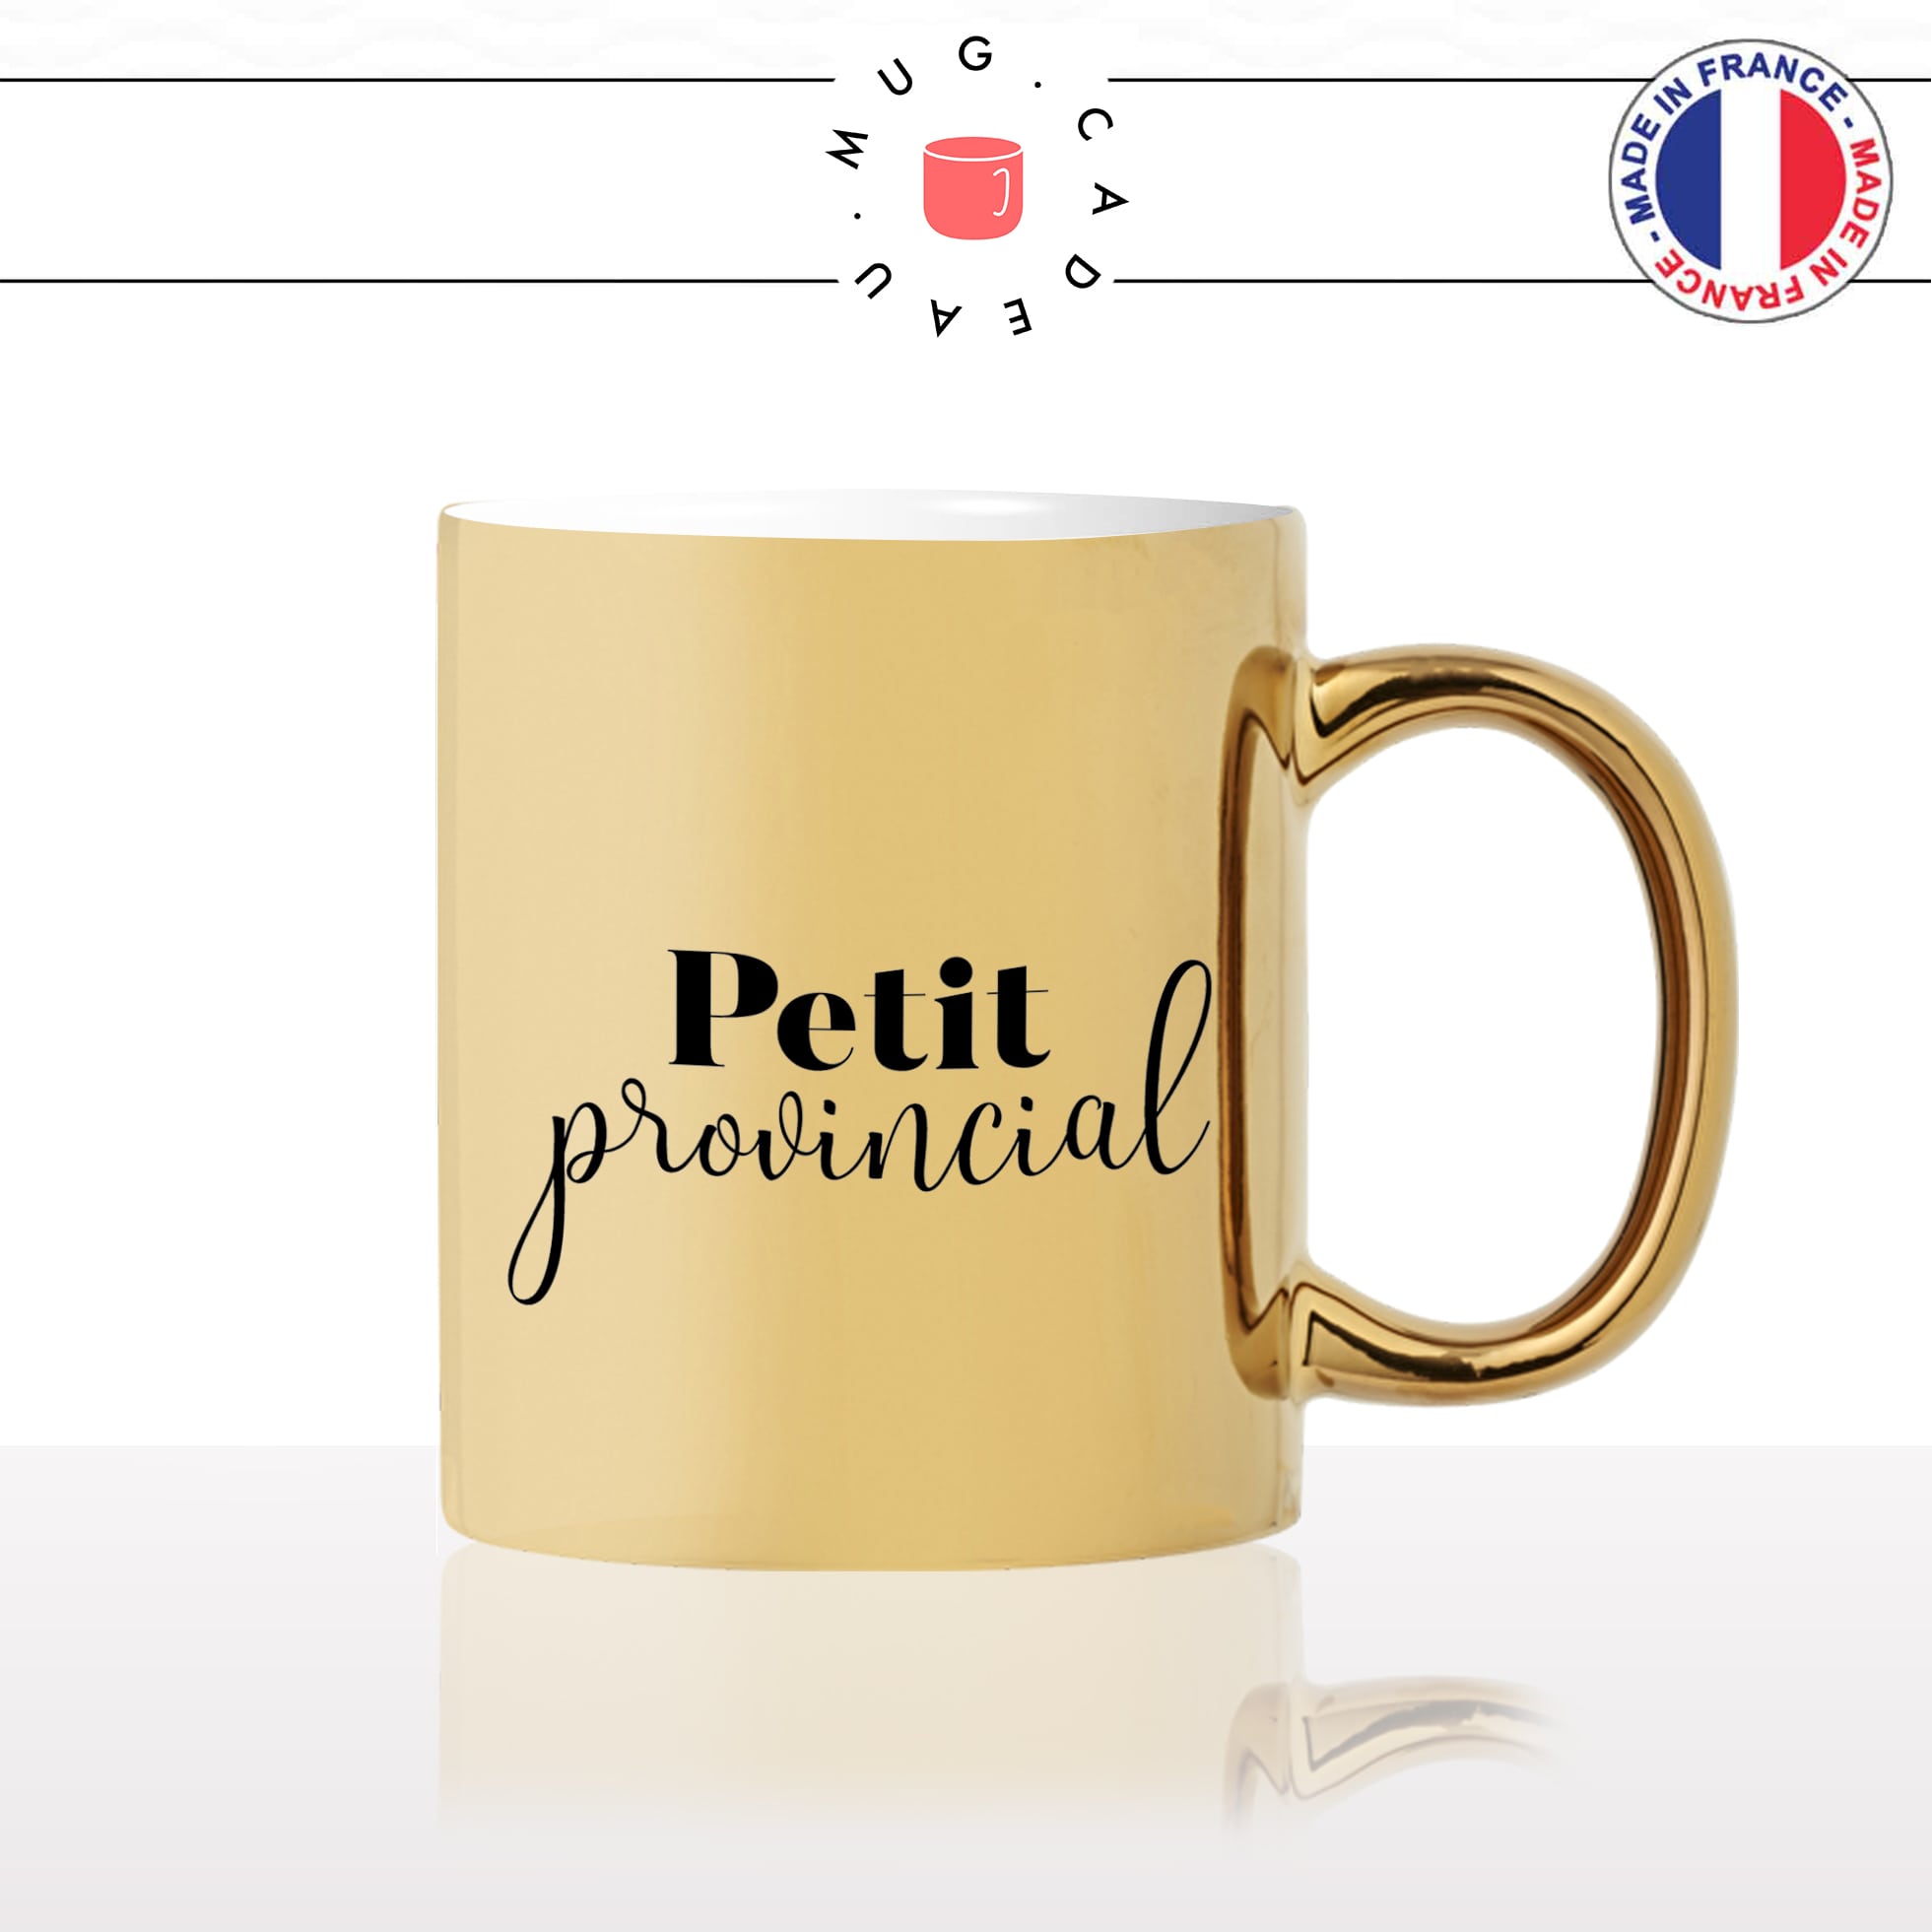 mug-tasse-doré-or-gold-petit-provincial-campagne-ville-paris-travail-collegue-ami-colloc-cool-humour-fun-idée-cadeau-personnalisé-café-thé2-min